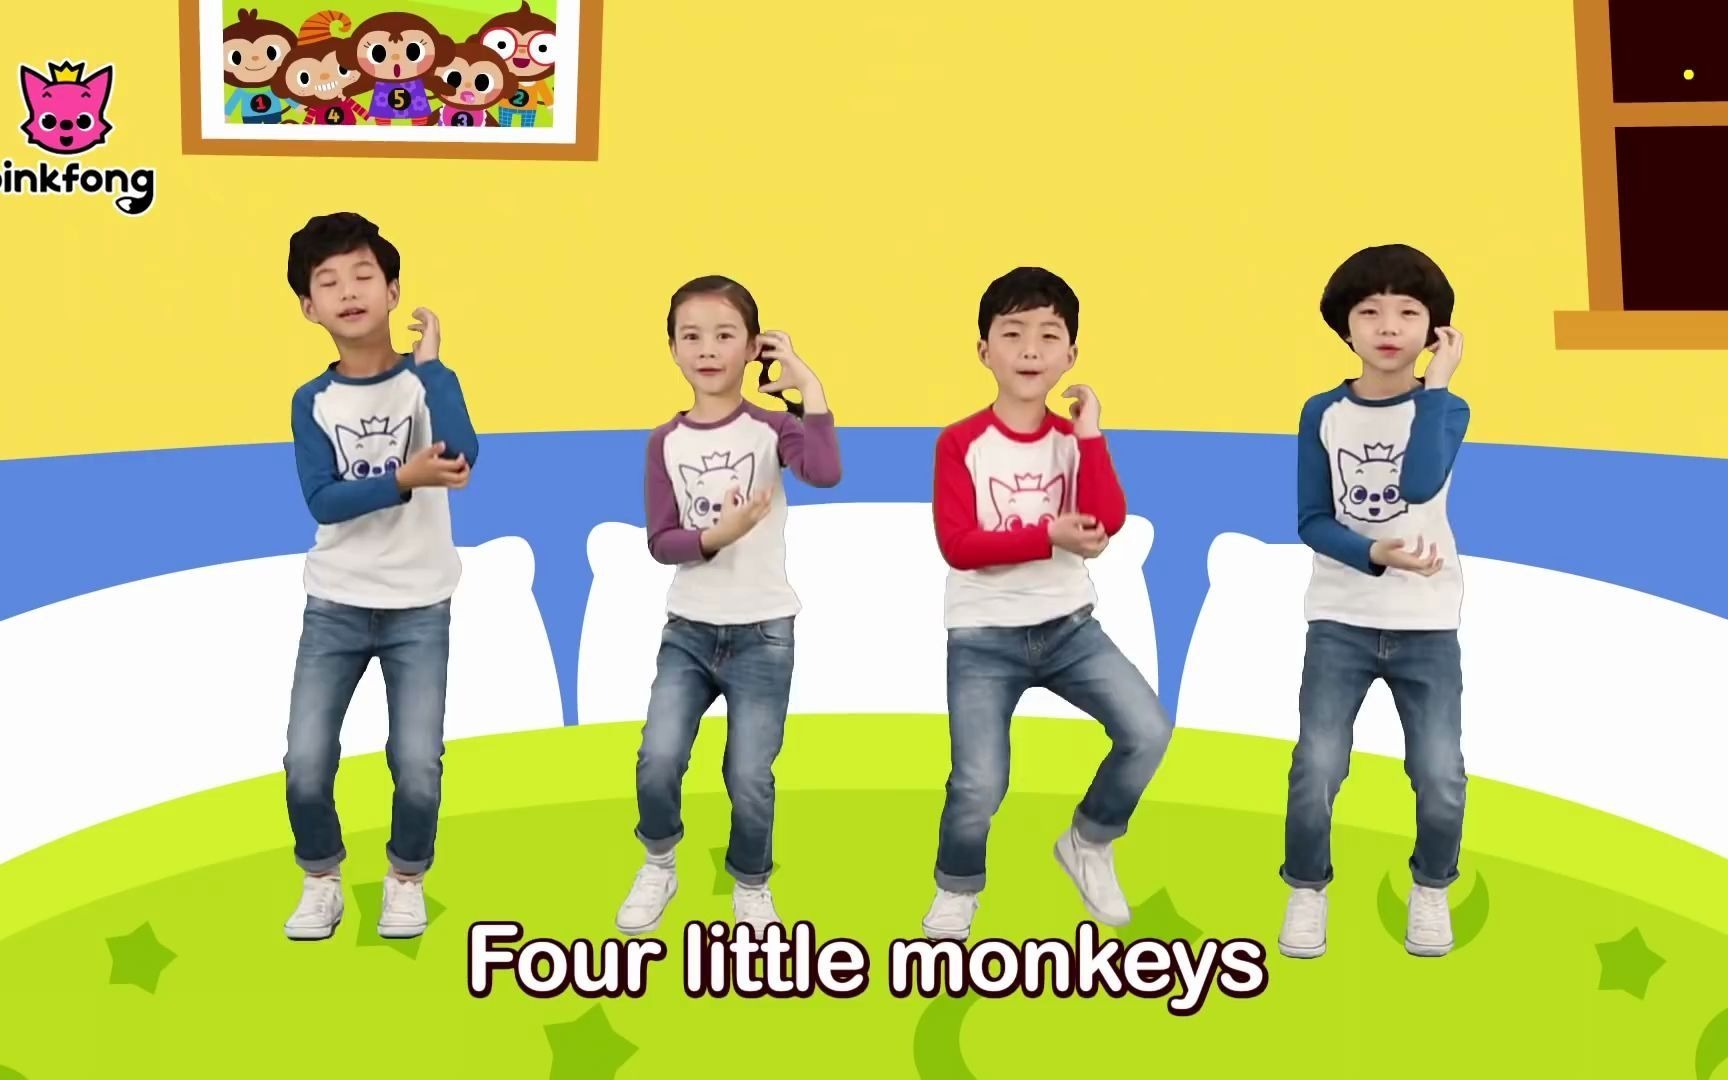 『经典英文儿歌』一起来跳舞吧！五只小猴子 Five Little Monkeys Dance Along by Pinkfong